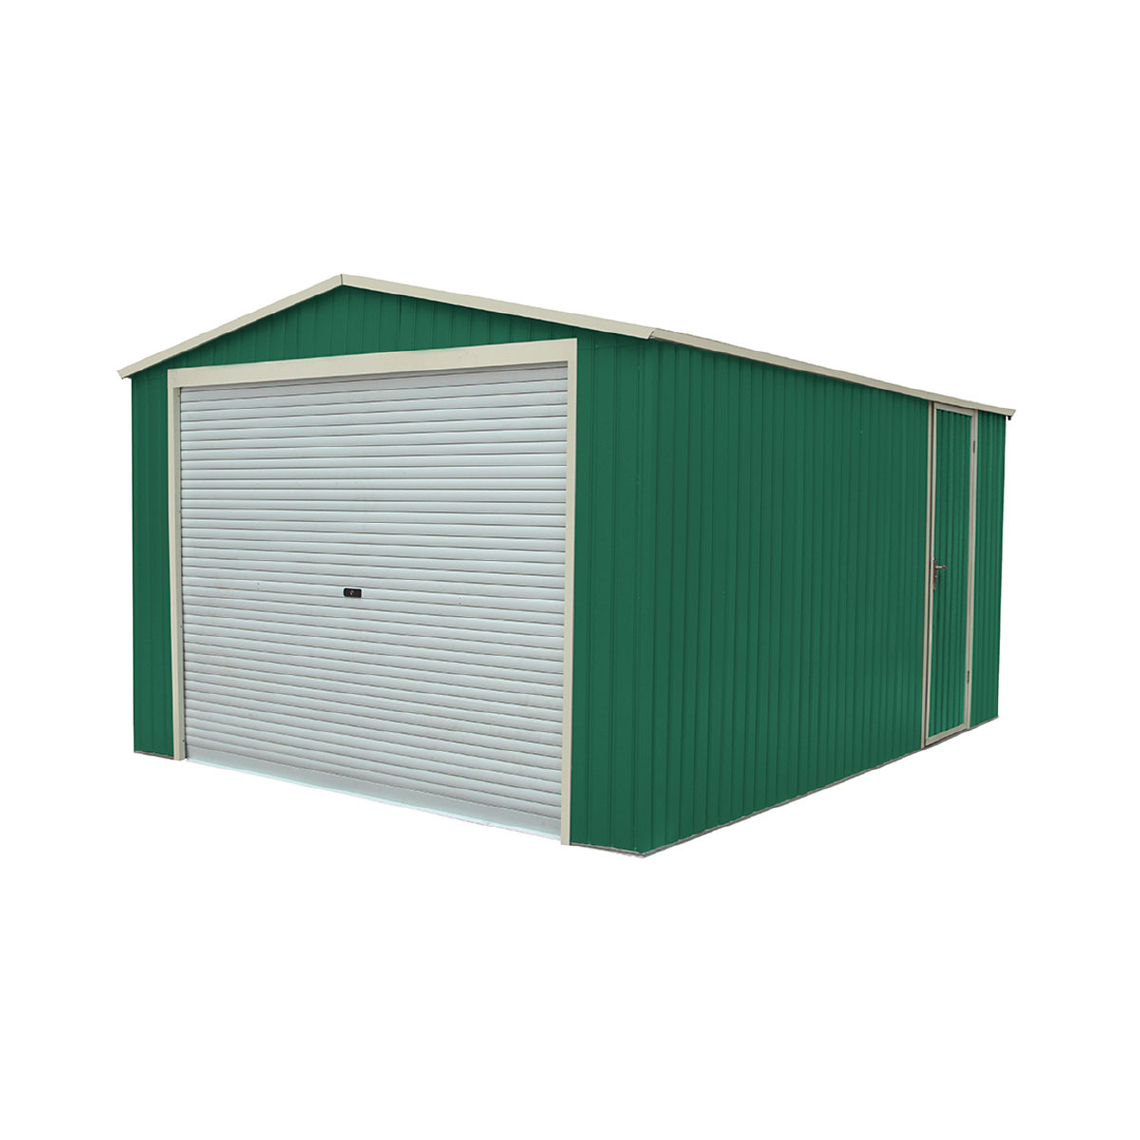 Gardiun - Garage Voiture Métallique Gardiun Essex - 19,5 m² Extérieur 576x338x243 cm Vert - Garages en métal